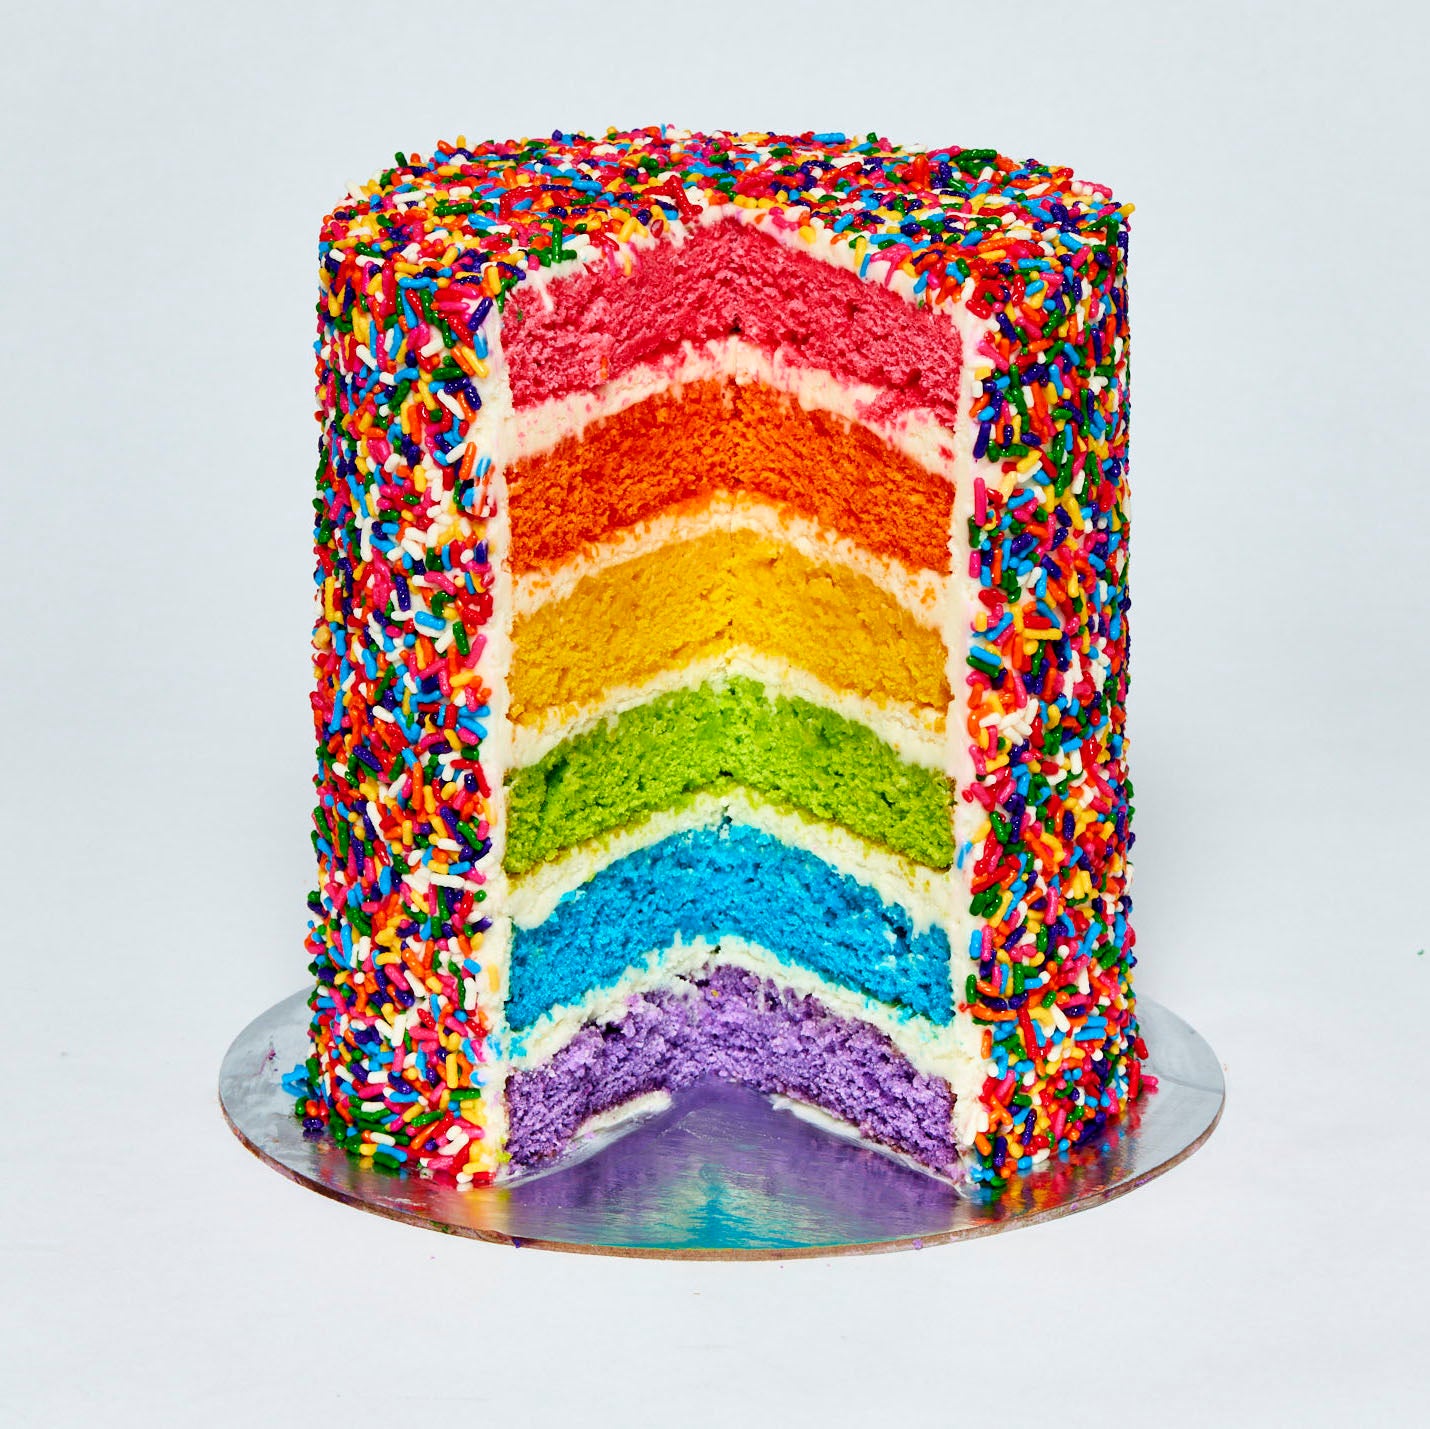 Midi Rainbow Cake!